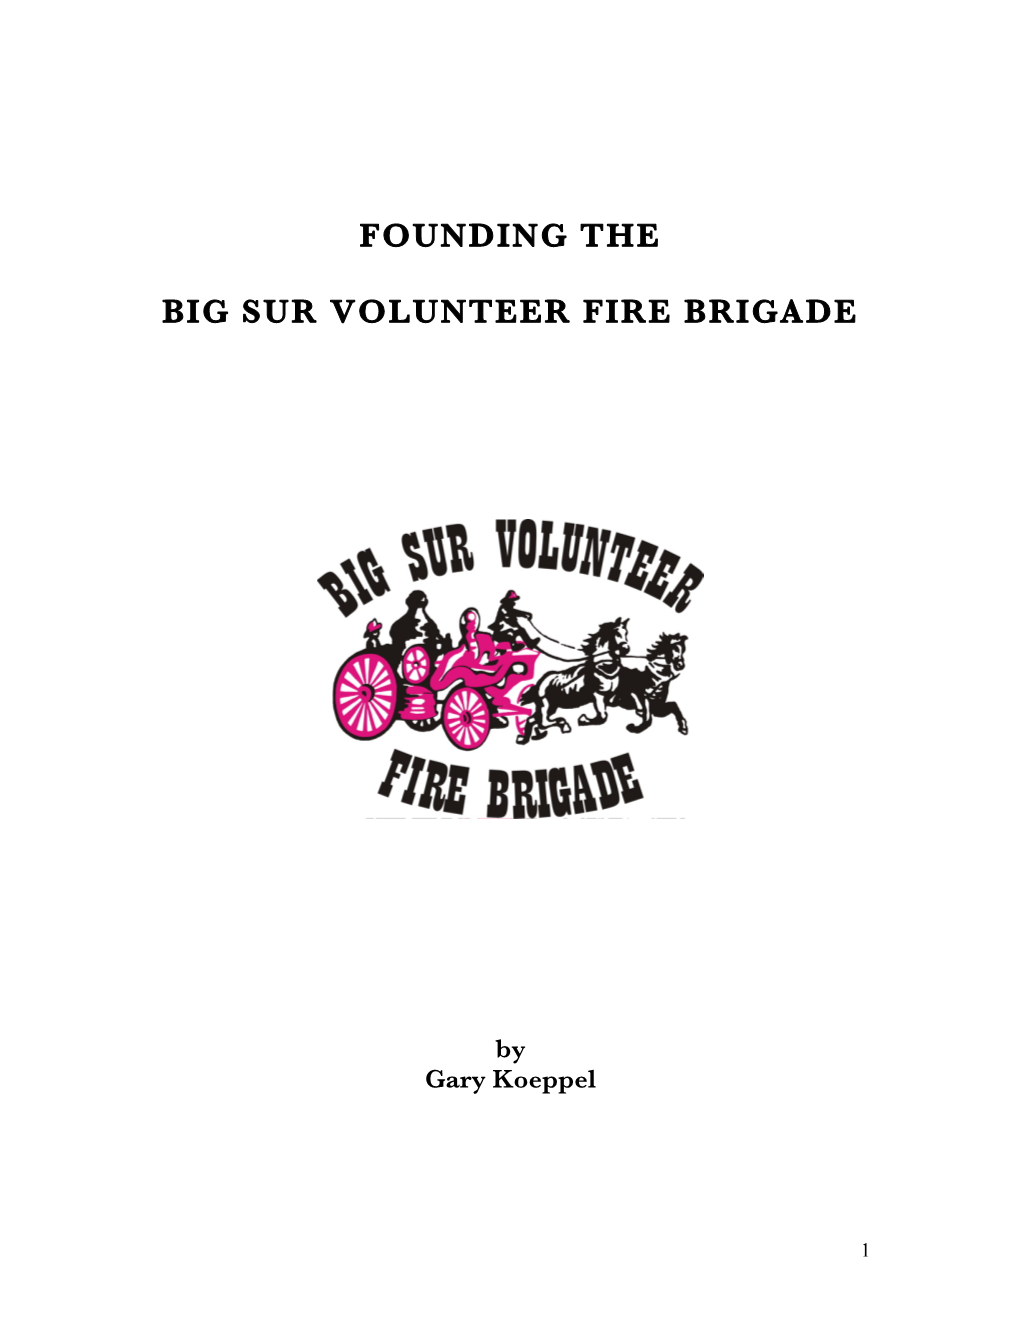 Founding the Big Sur Volunteer Fire Brigade